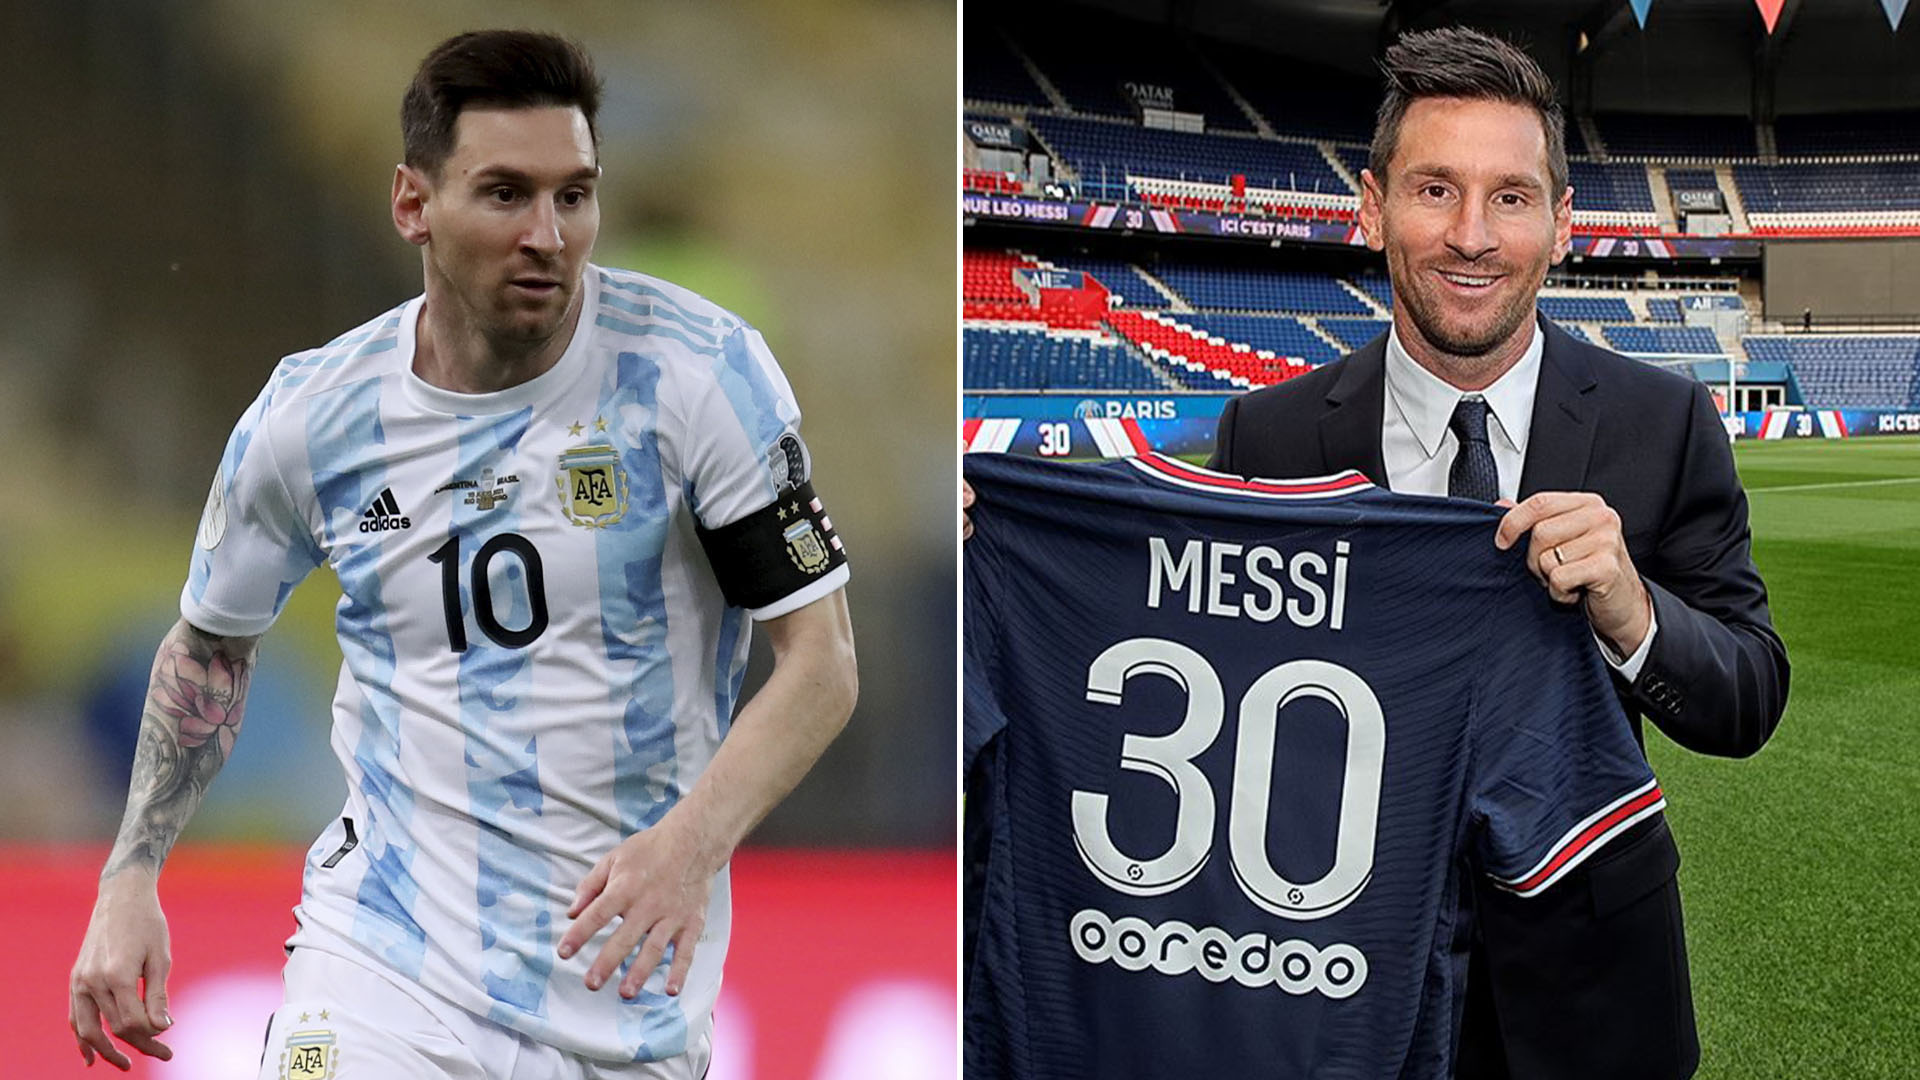 Las dos cláusulas especiales que Messi incluyó en su contrato con PSG para darle prioridad a la selección argentina - Infobae